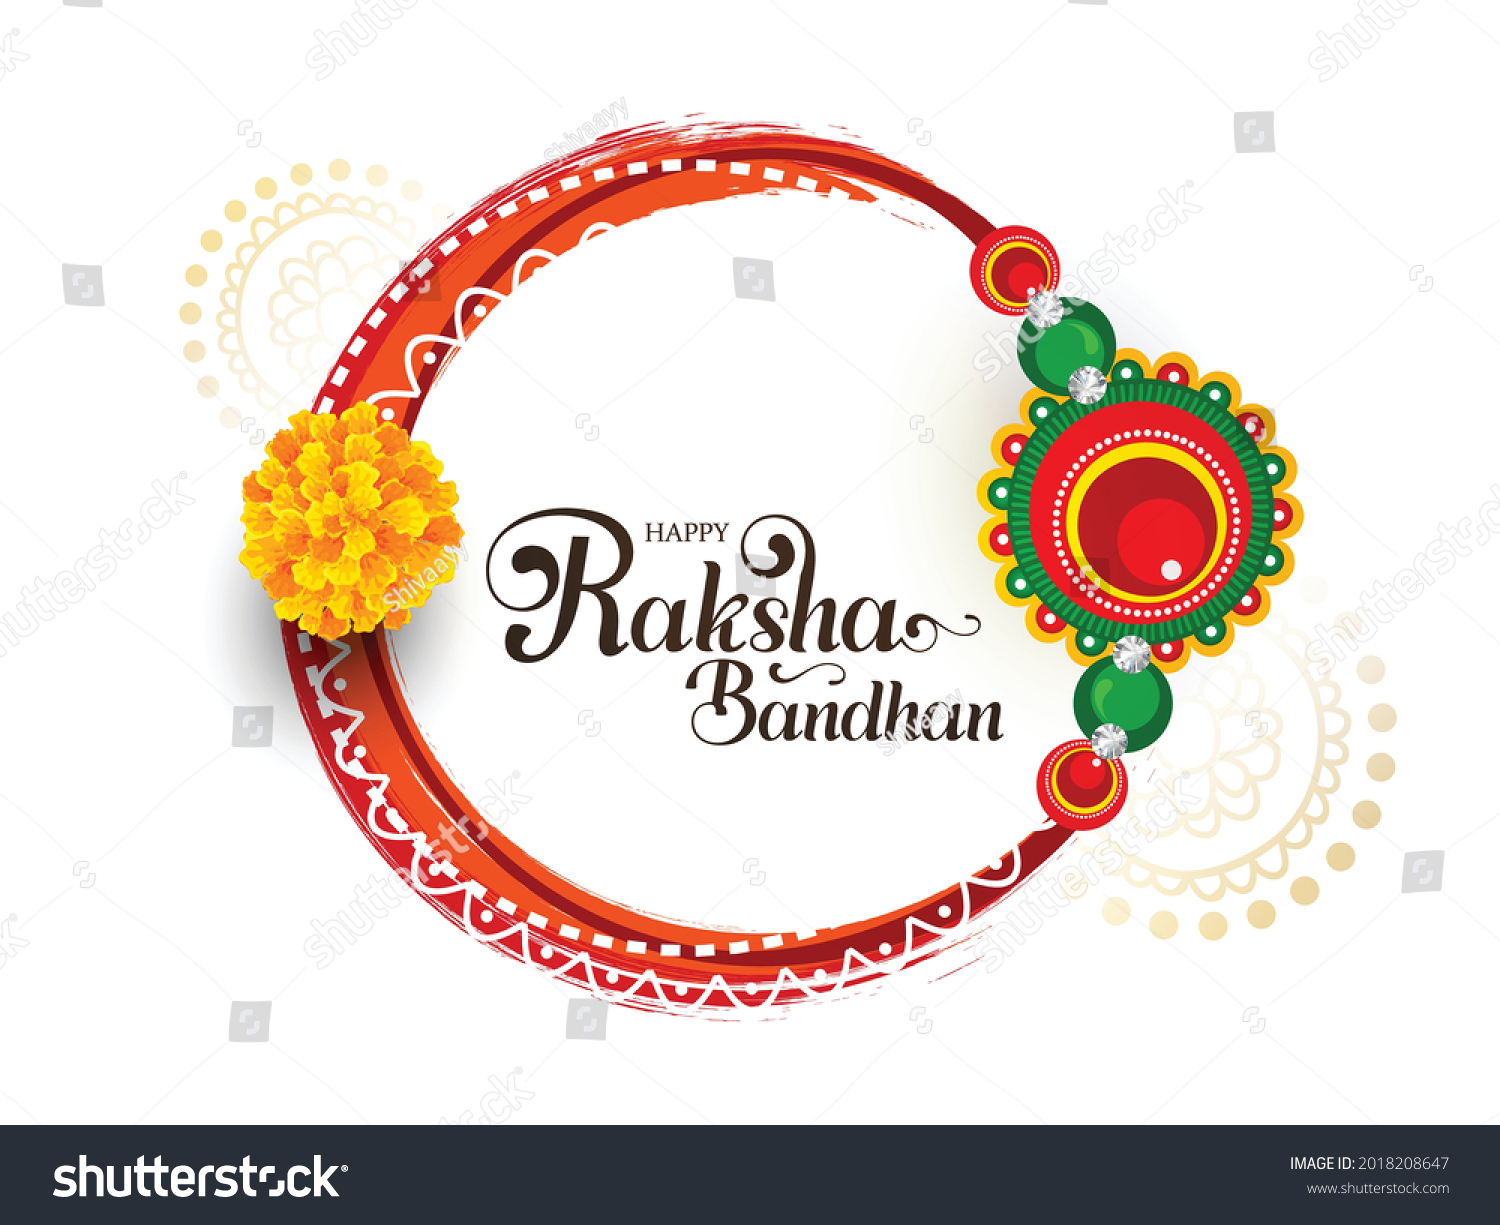 SVG of Beautiful Rakhi Traditional Background Design with Frame for Raksha Bandhan Festival. svg